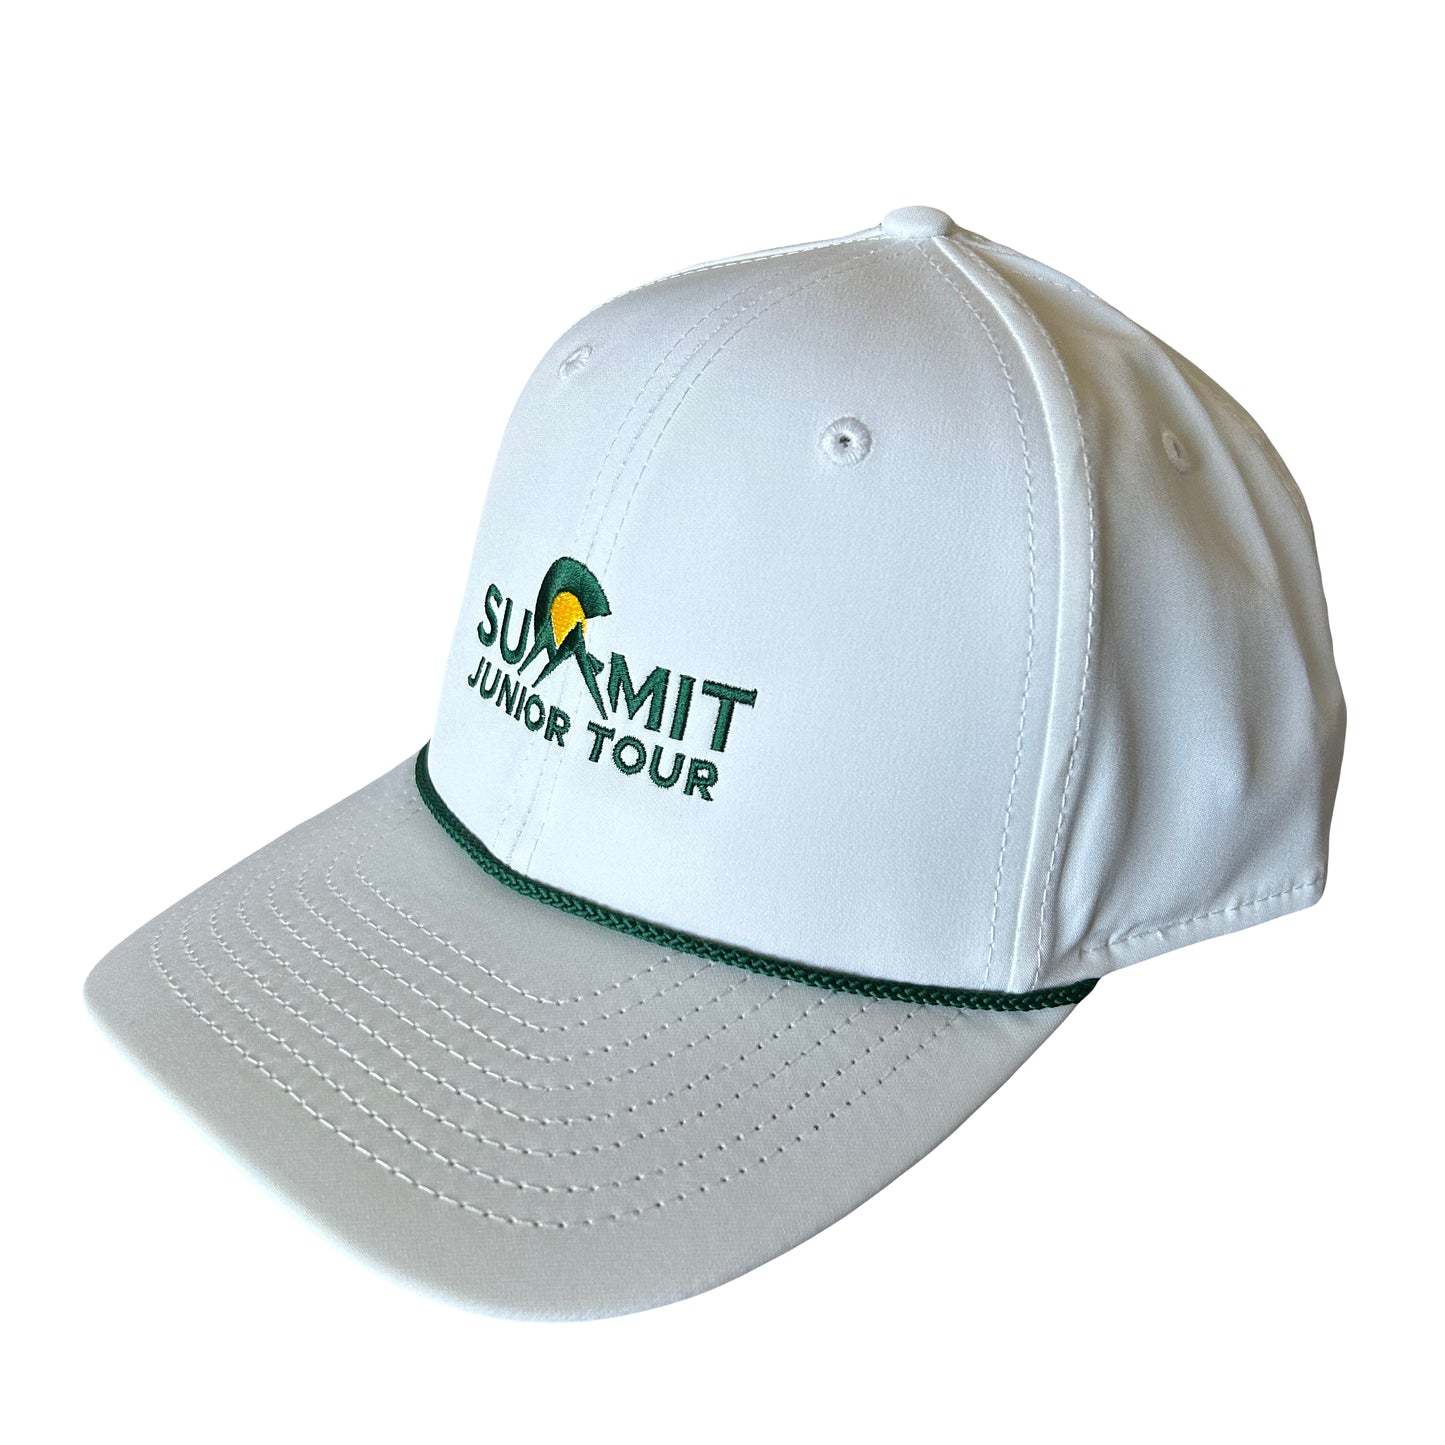 Summit Junior Tour Masters Hat-2 Colors